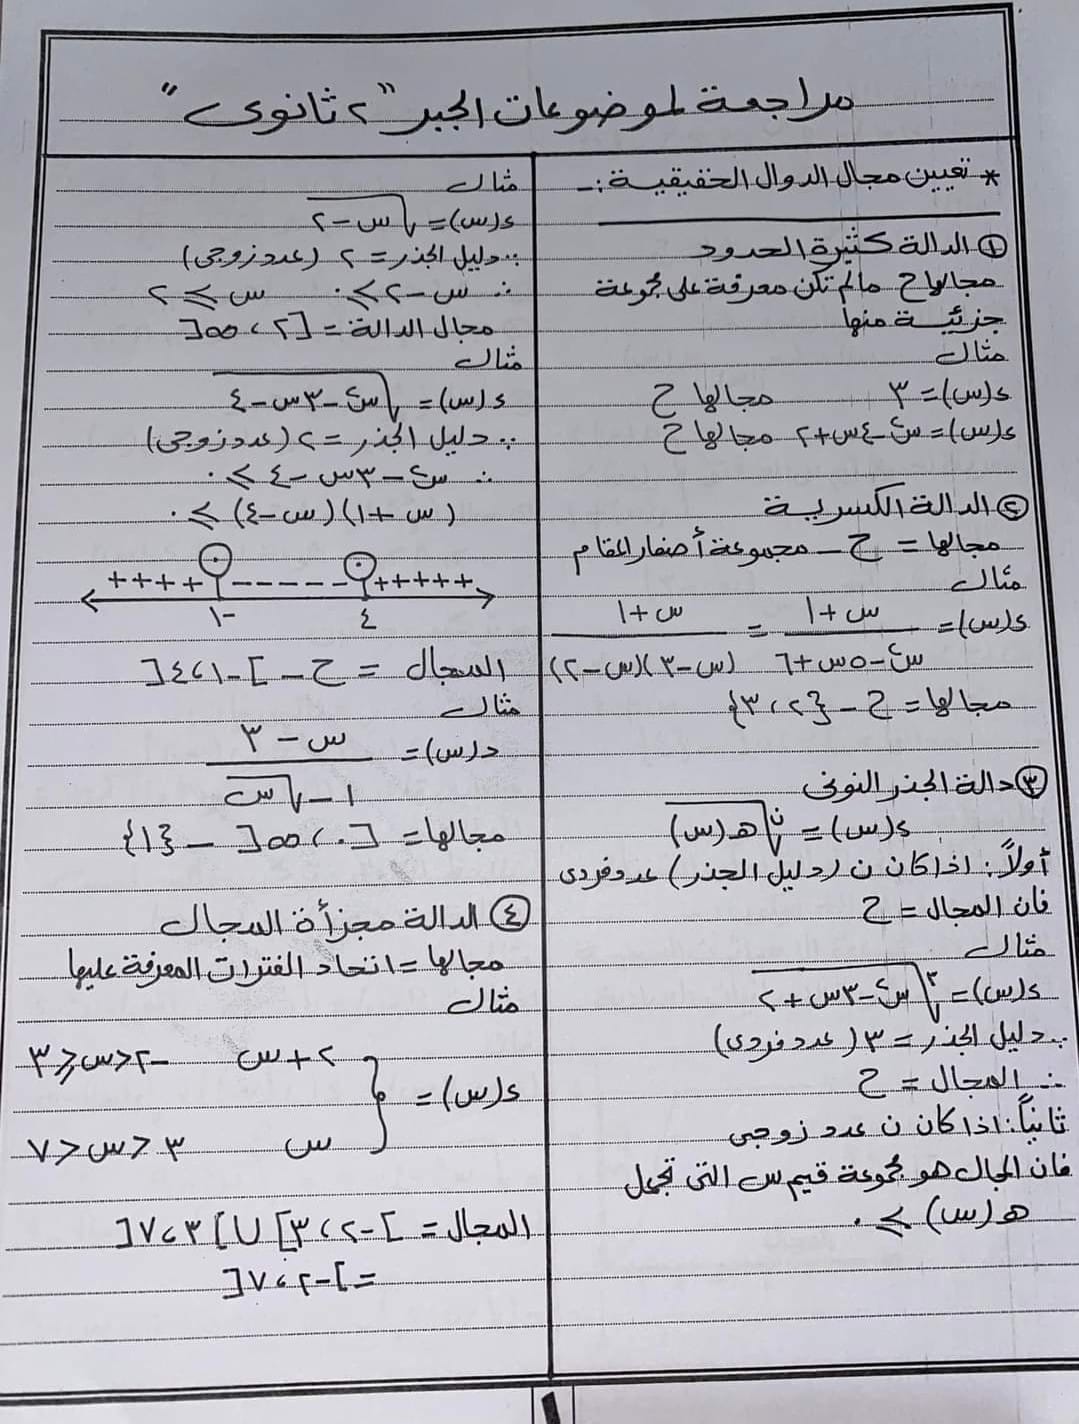 الصف الثاني الثانوي ملخص وتمارين مجابة رياضيات للأستاذ/علاء محمد الطاهر